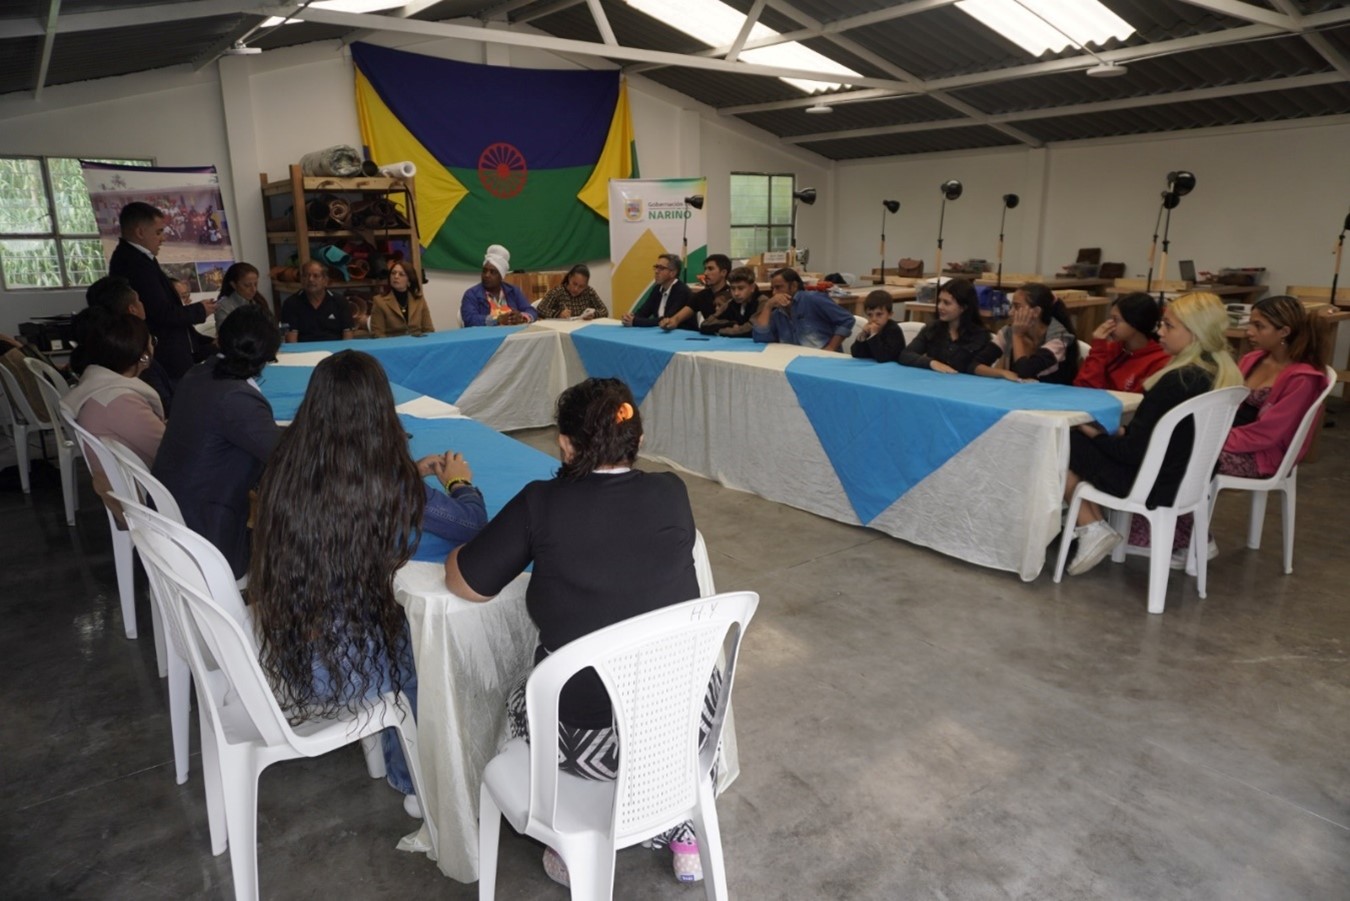 Cancillería, Gobernación de Nariño y Artesanías de Colombia formalizaron la entrega de un taller de marroquinería para el pueblo gitano Rrom de Pasto, Nariño